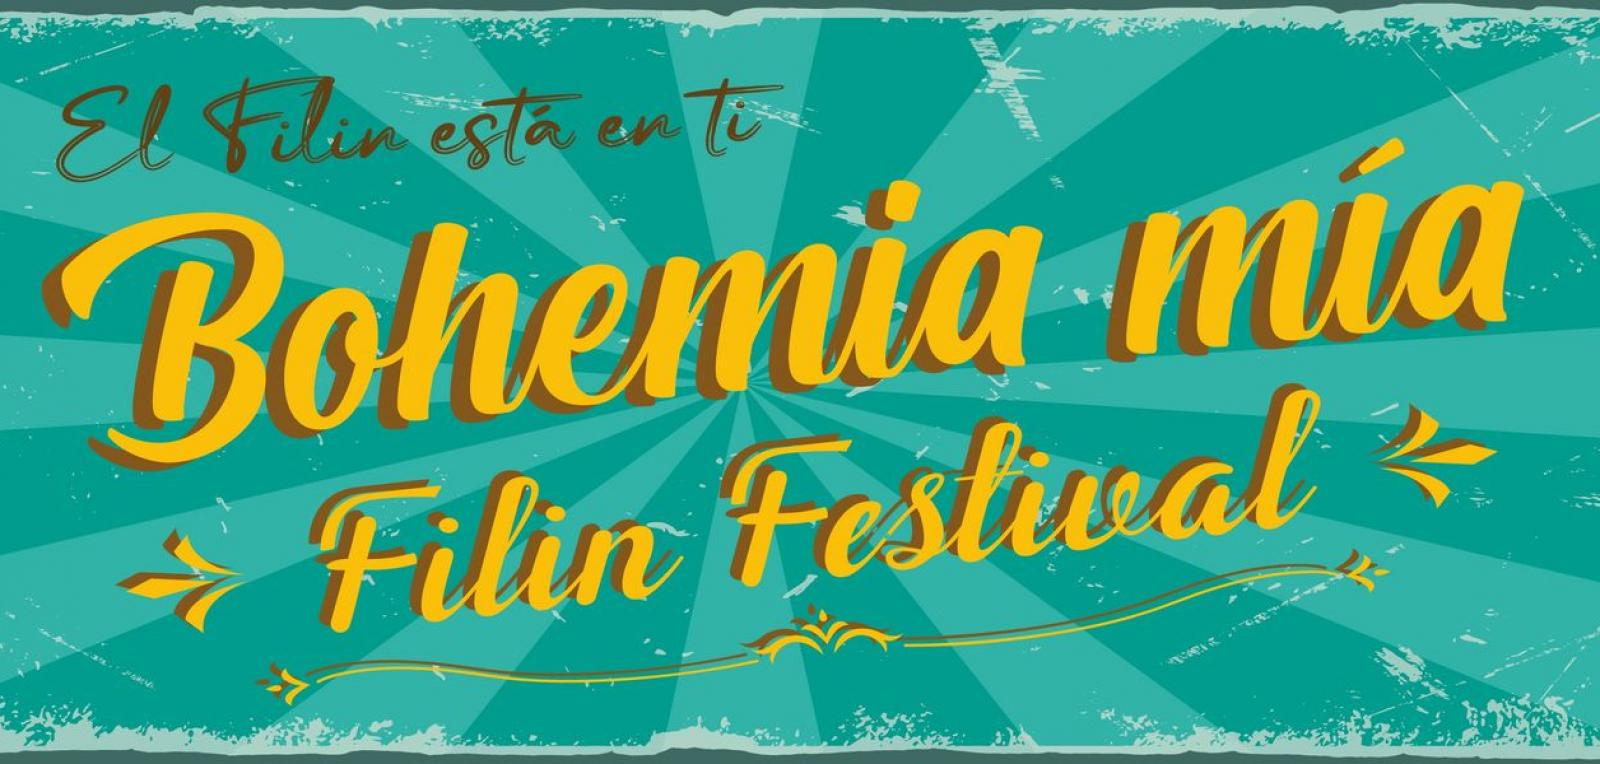 Bohemia Mía World Feeling Festival begins in Cuba